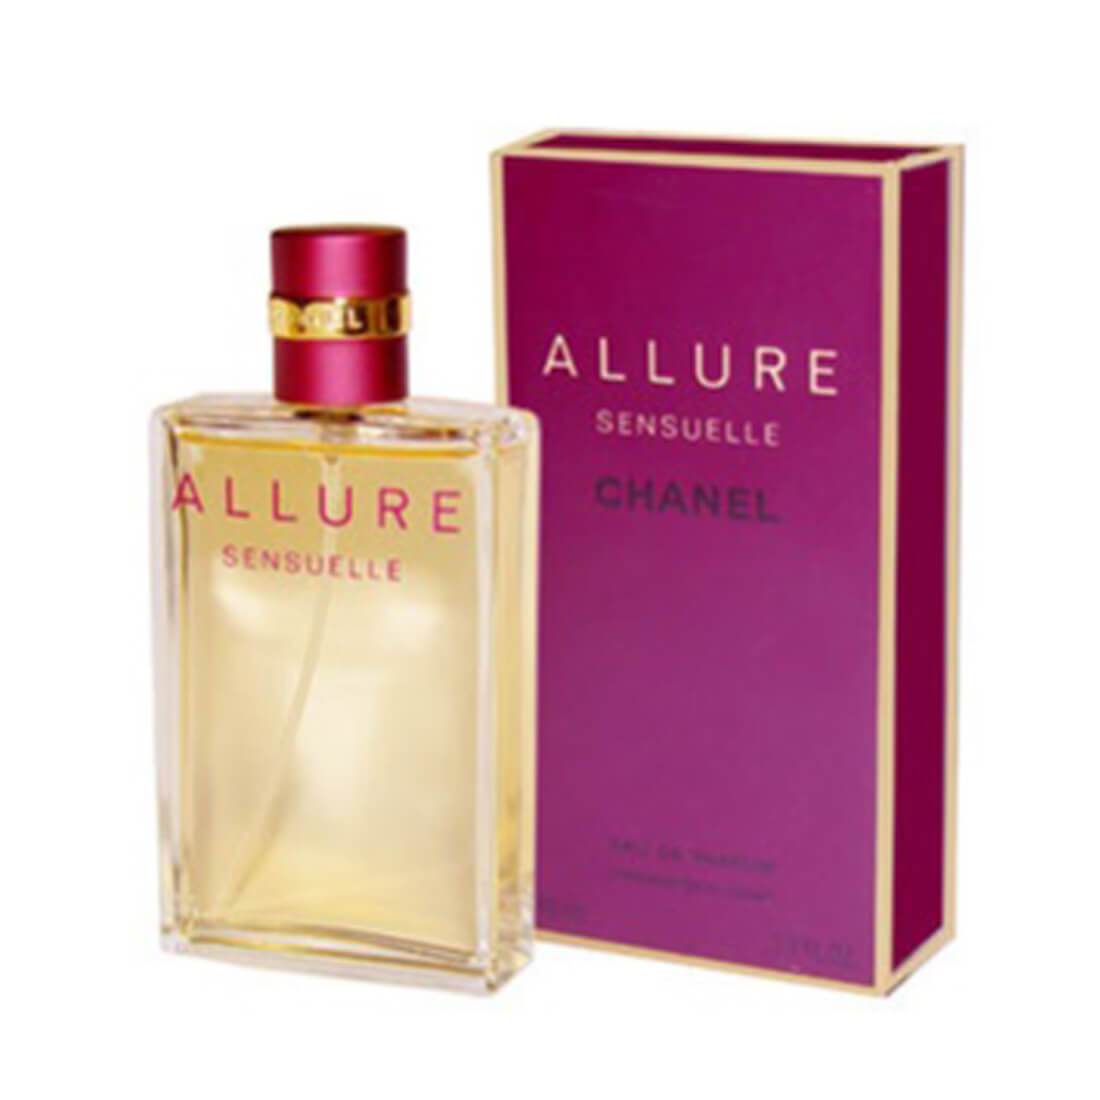 Chanel Allure Sensuelle Eau de Parfum Vaporisateur Spray, 50 ml / 1.7 fl. oz